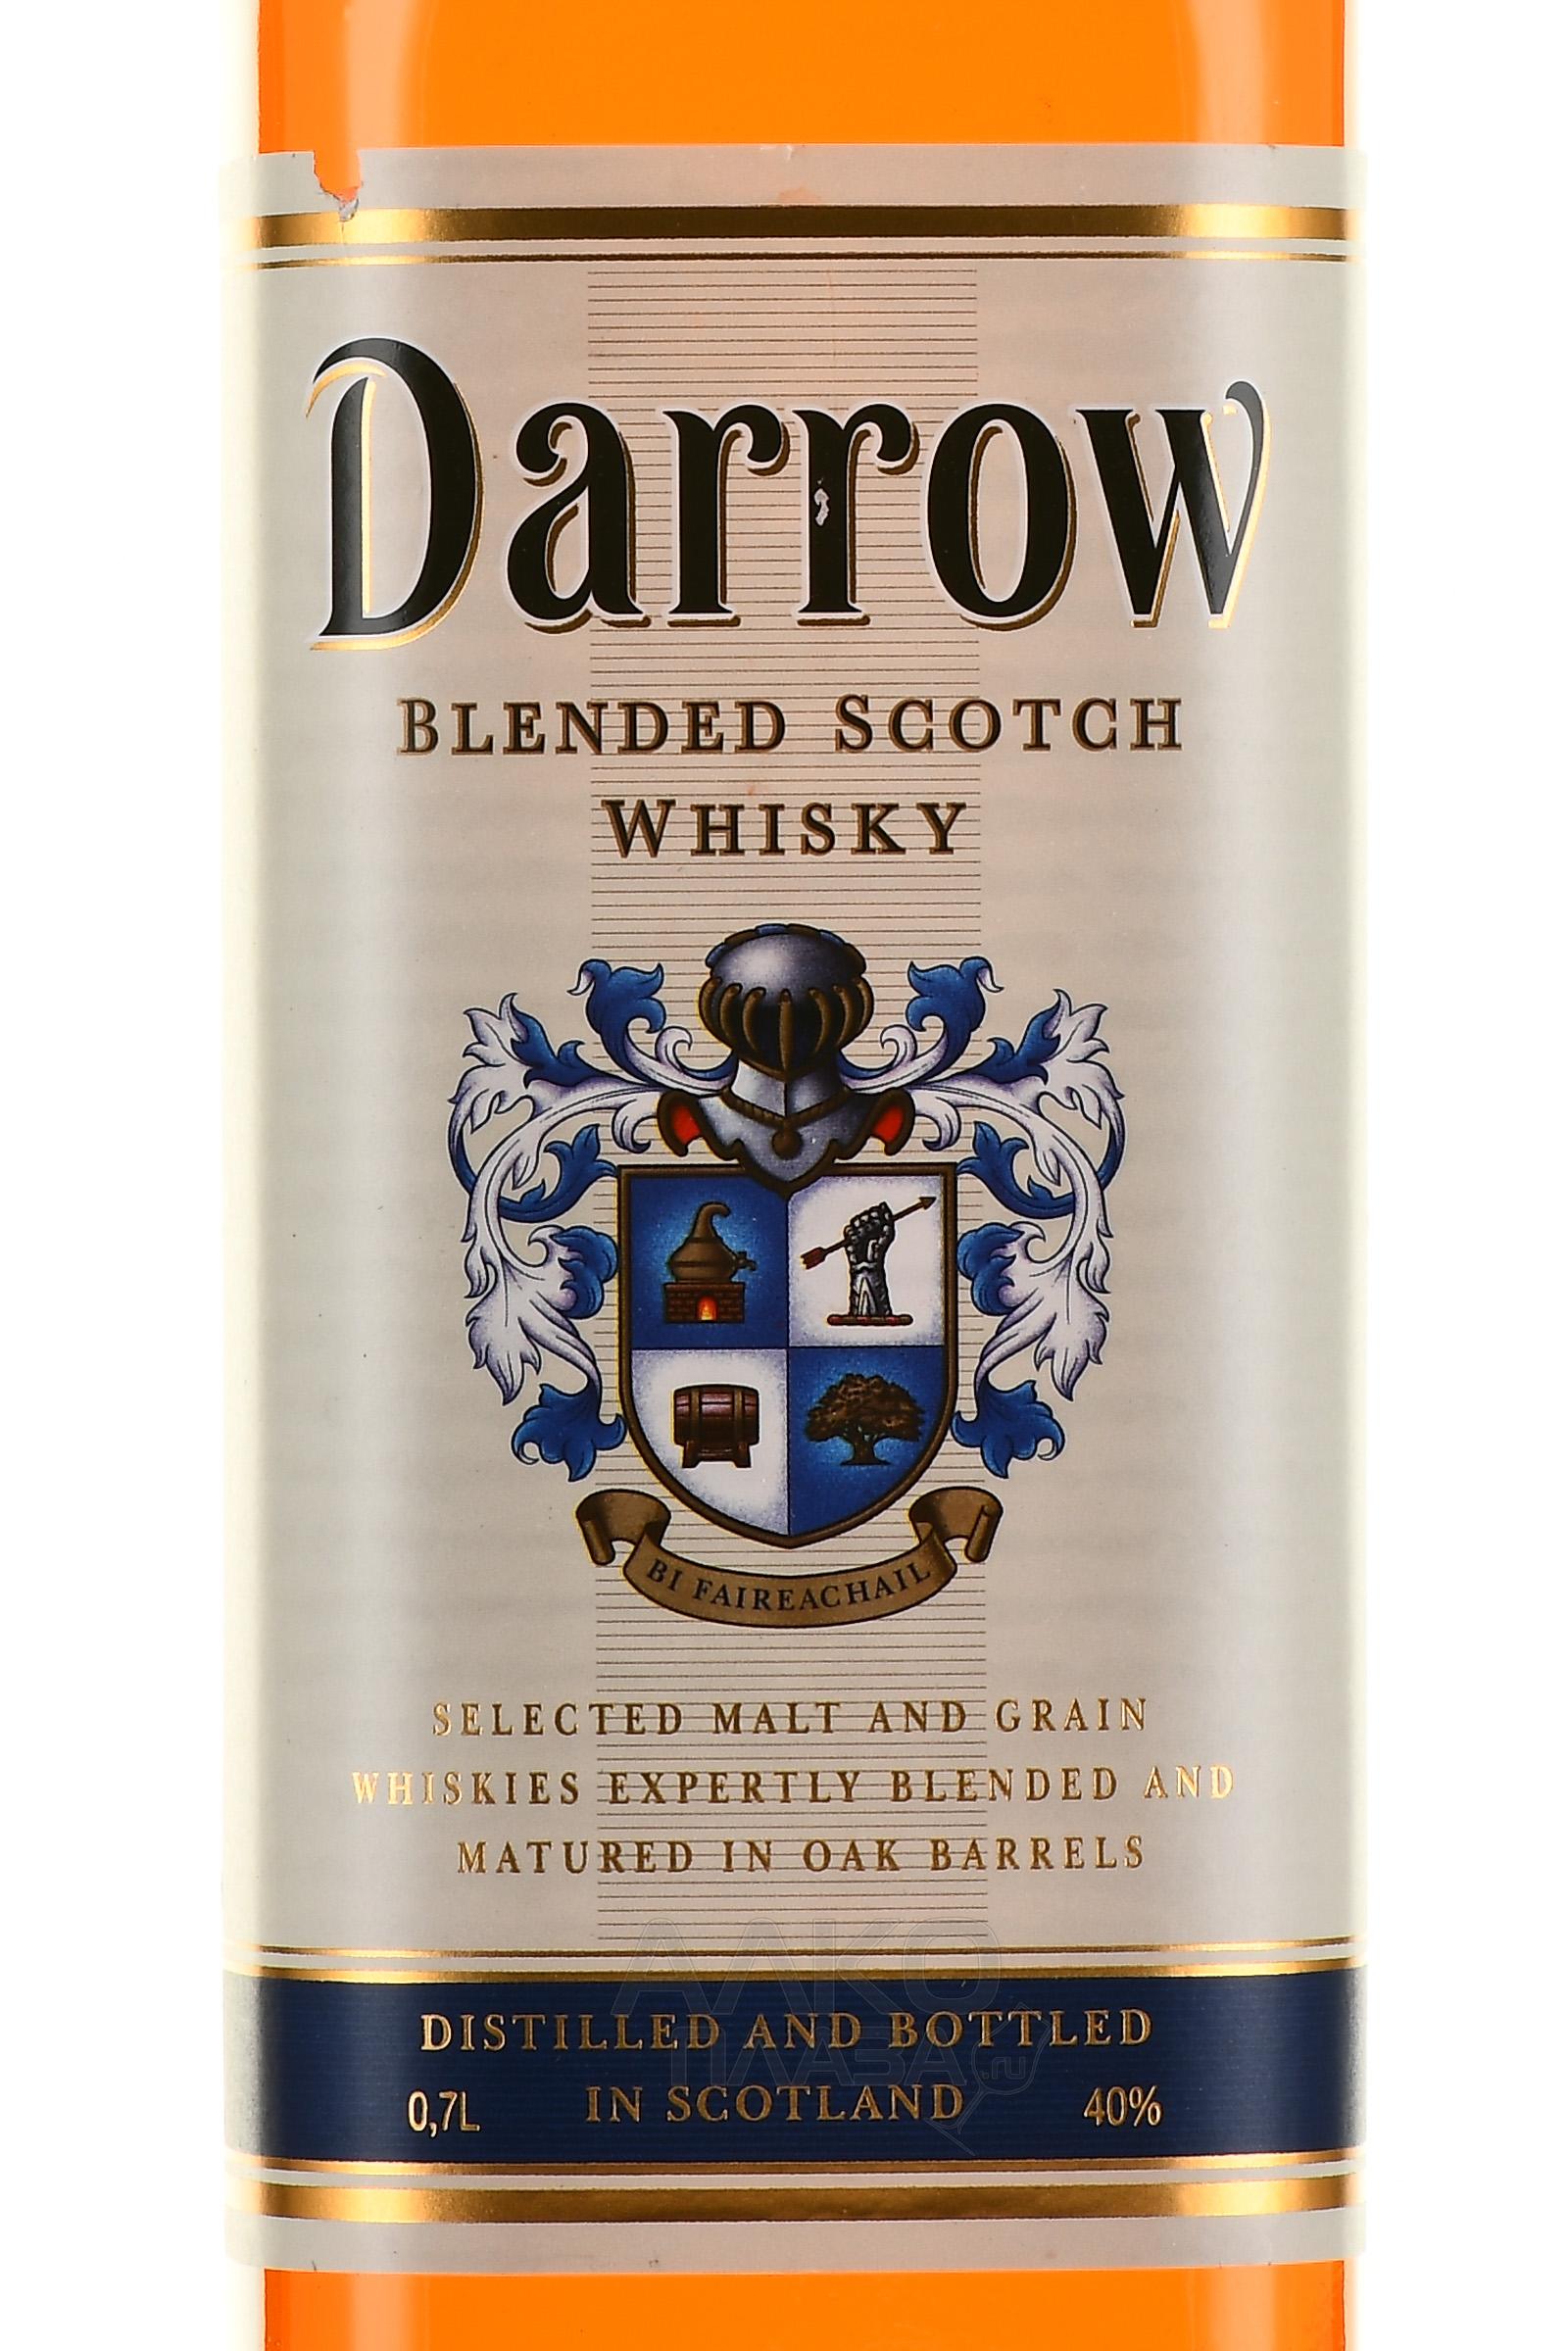 Darrow цена 0.7. Виски Darrow шотландский купажированный. Виски Дэрроу 0.7. Виски Дэрроу шотландский. Виски Дэрроу 0.5 шотландский купажированный 40.